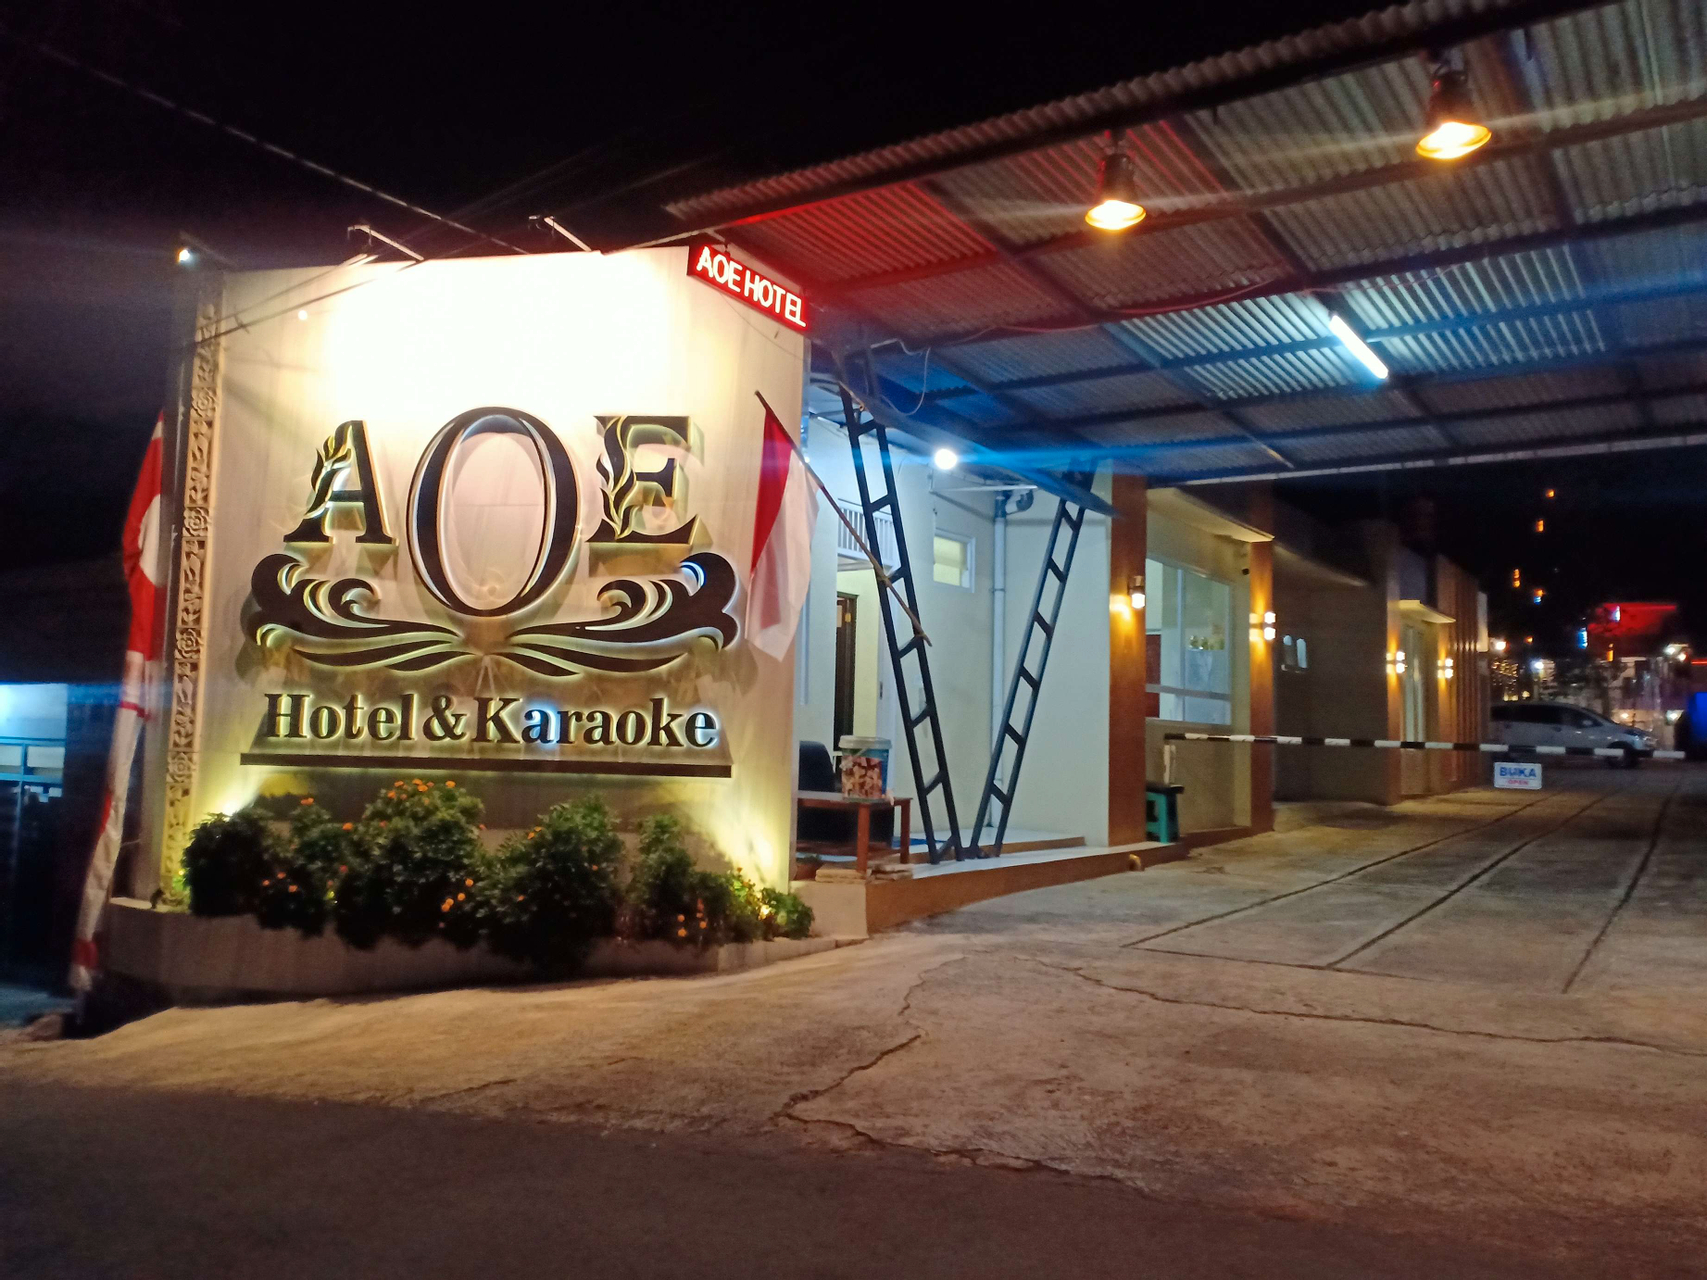 AOE Hotel Bandungan, Semarang